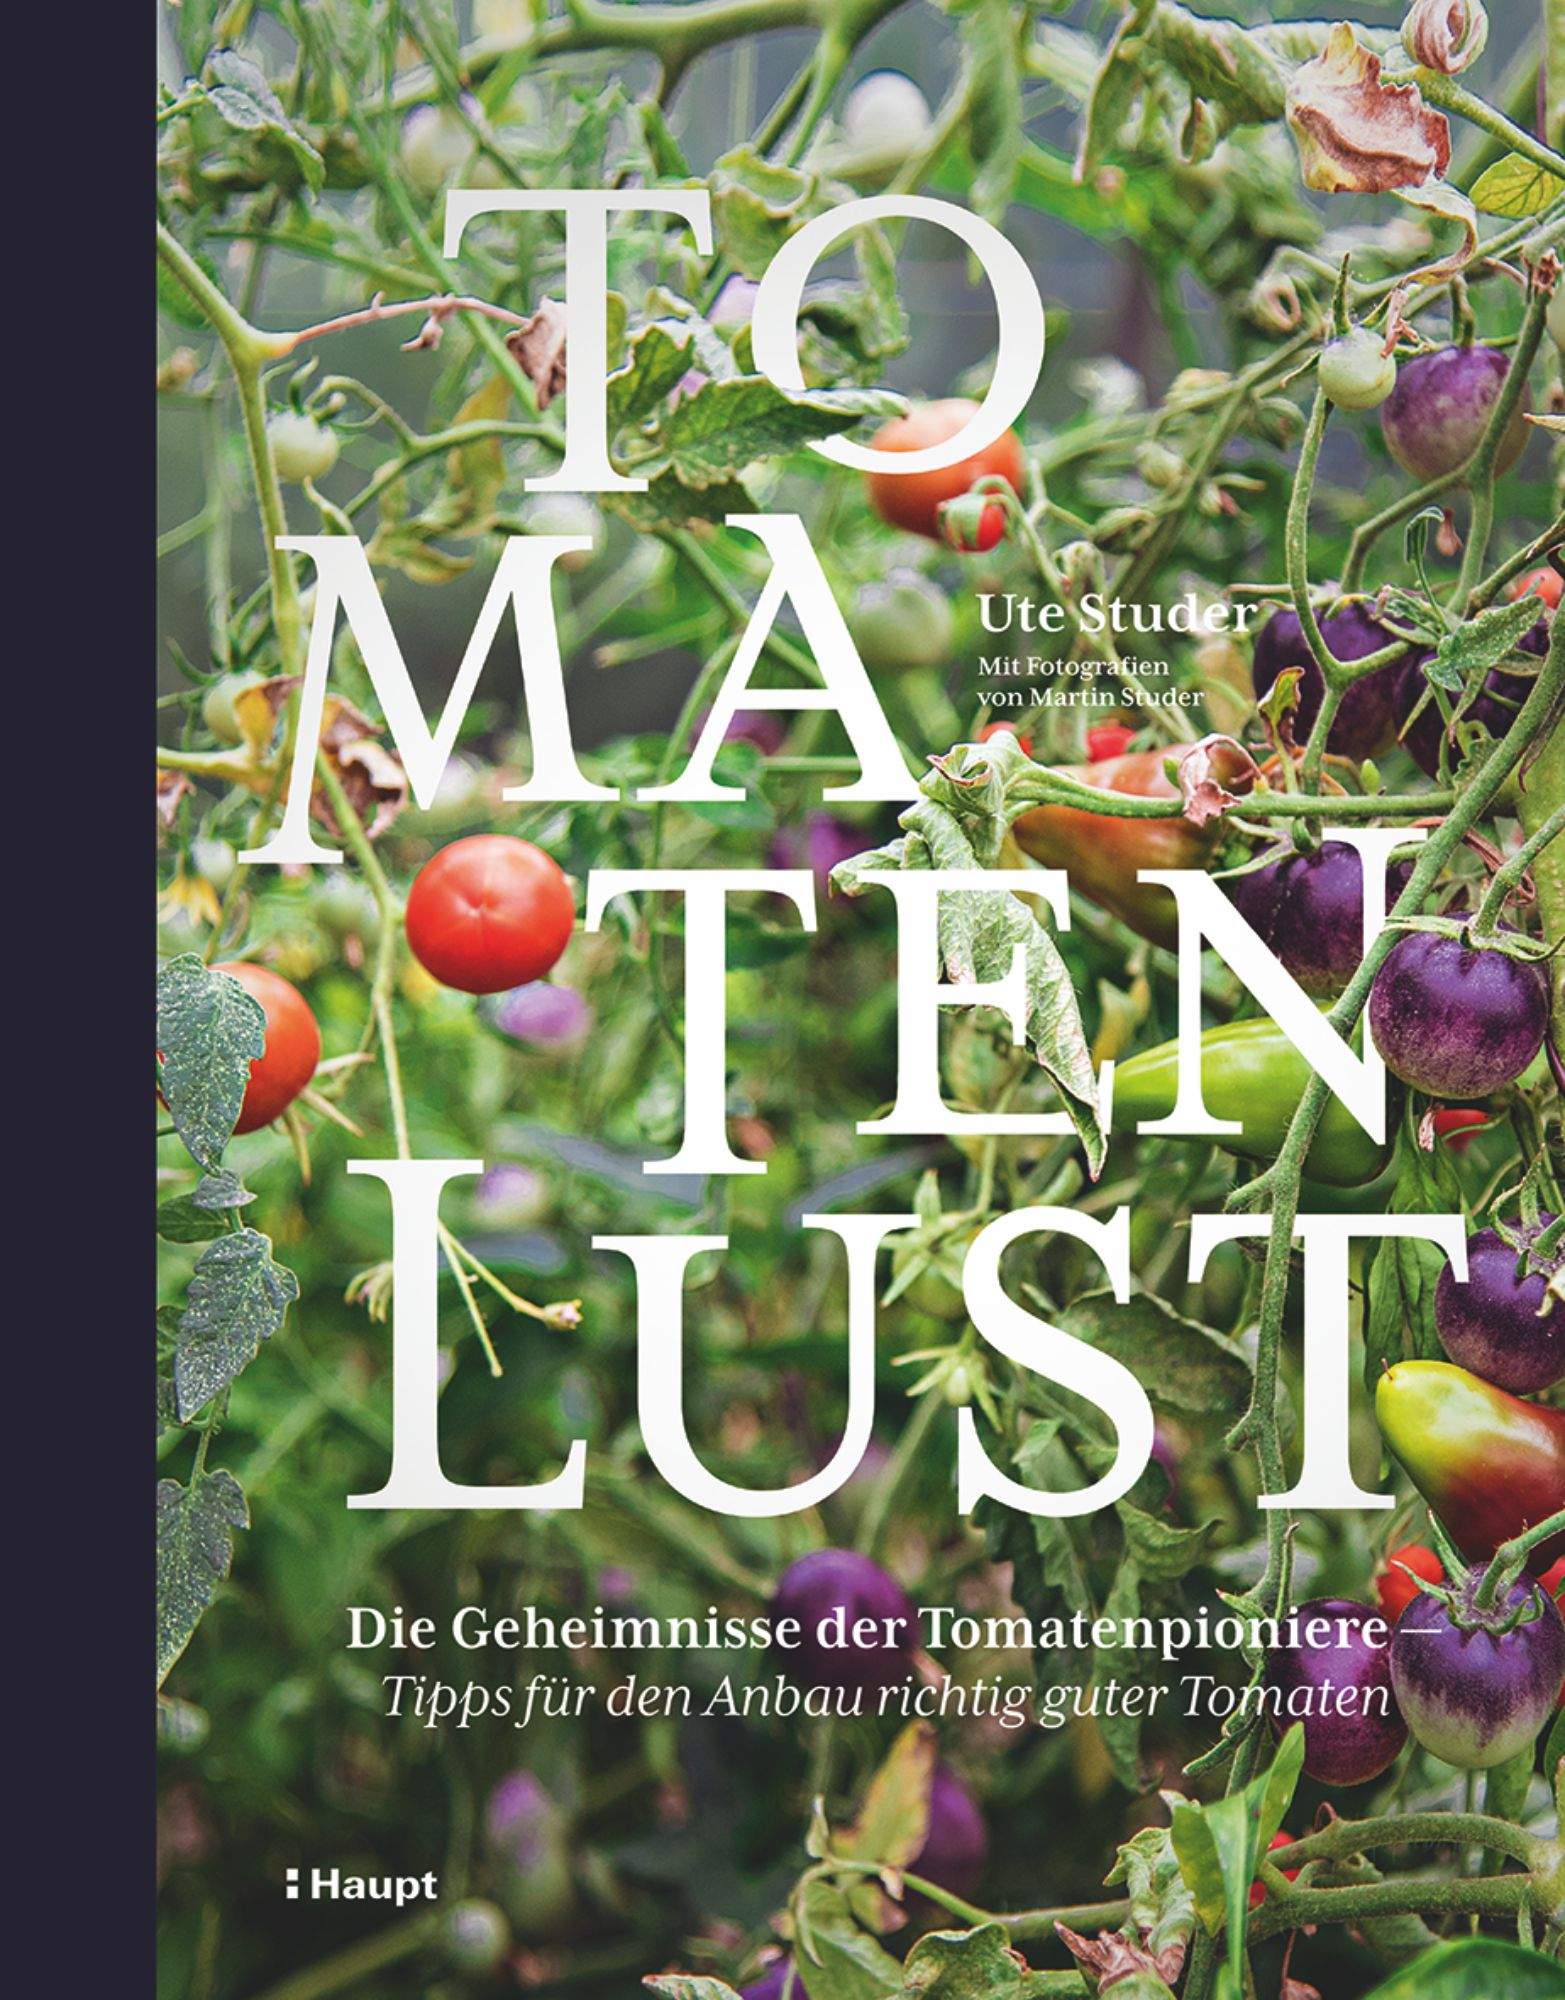 Tomaten Lust Geheimnisse der Tomatenpioniere Tipps fuer Tomaten Haupt Verlag Land Warenhaus